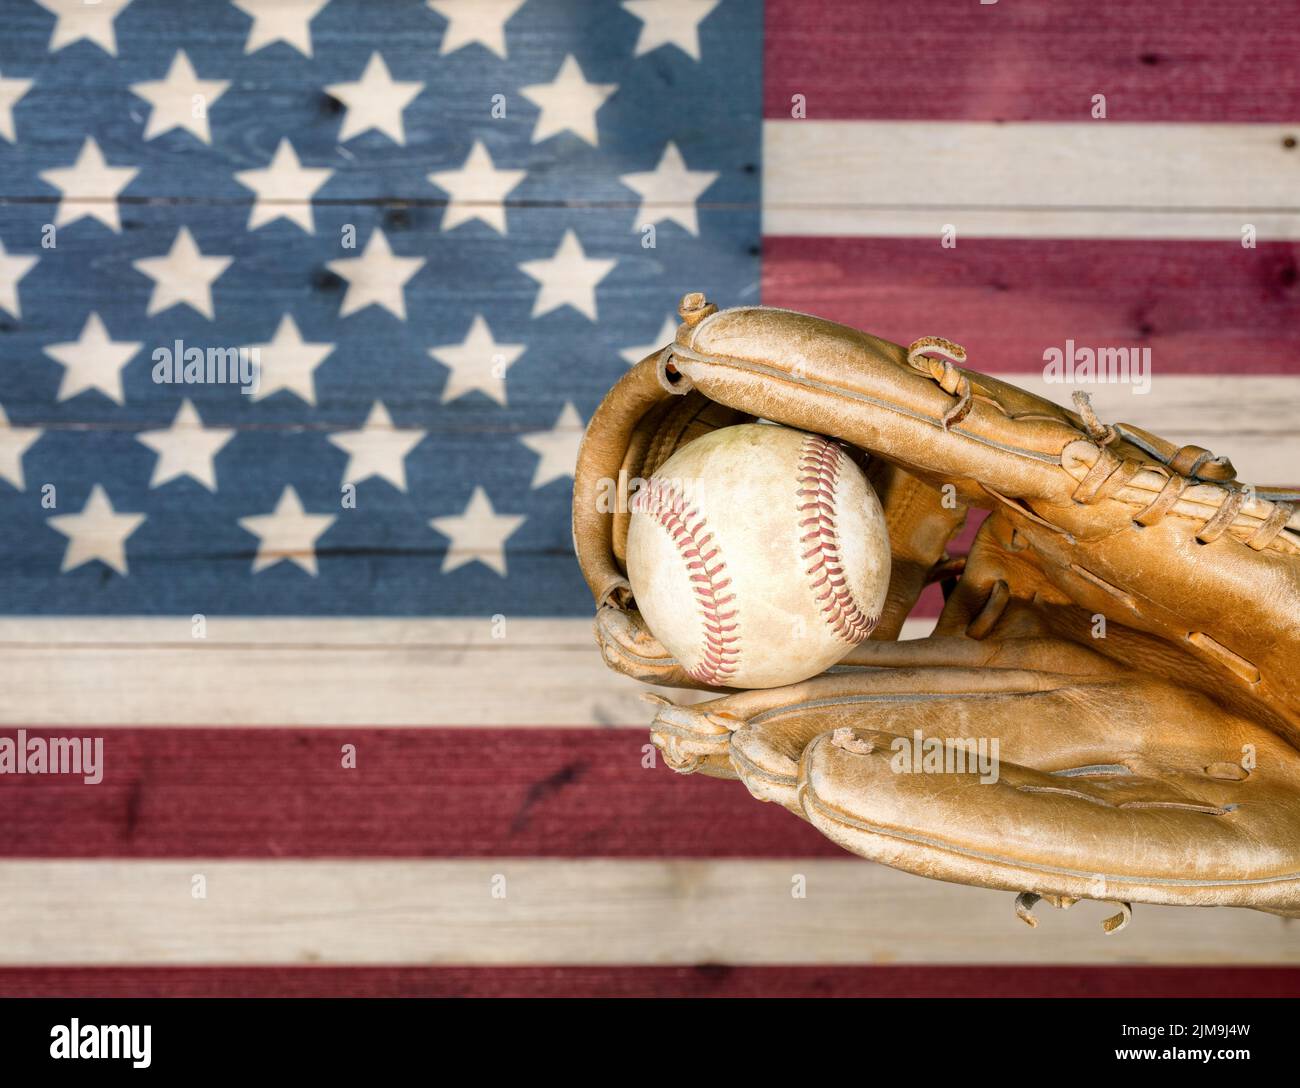 Verwitterter Baseballhandschuh und Ball mit verblassten Brettern, die in den Farben der amerikanischen Flagge lackiert sind Stockfoto